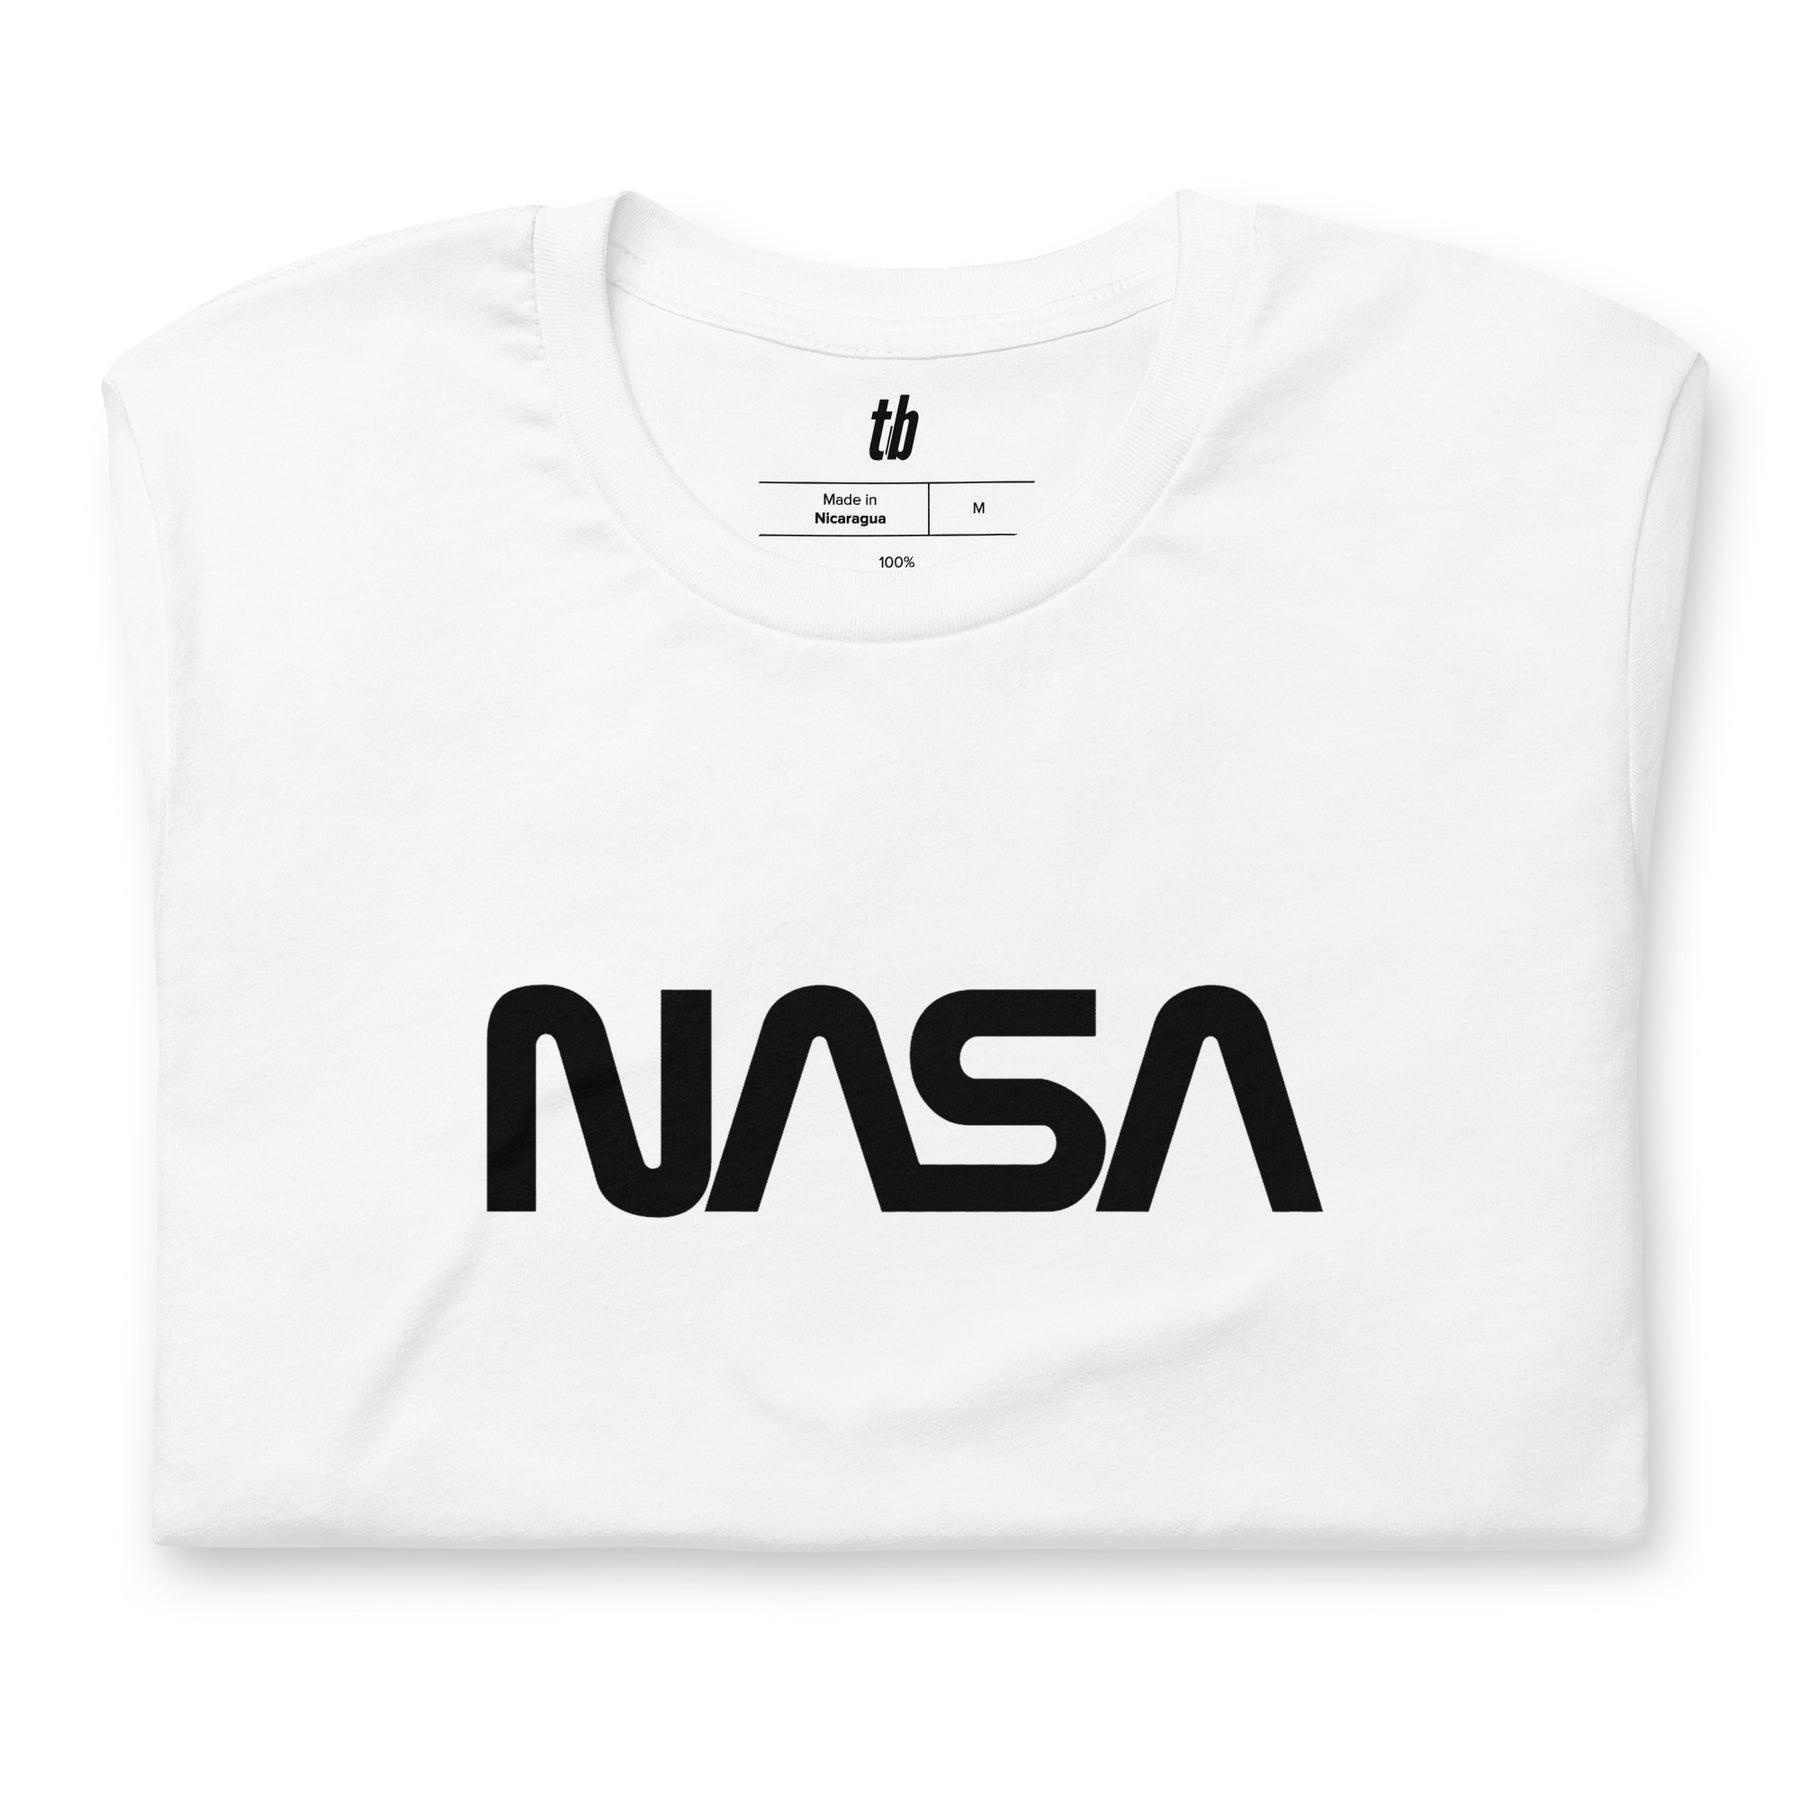 Nasa Worm Logo T-Shirt - Teebop